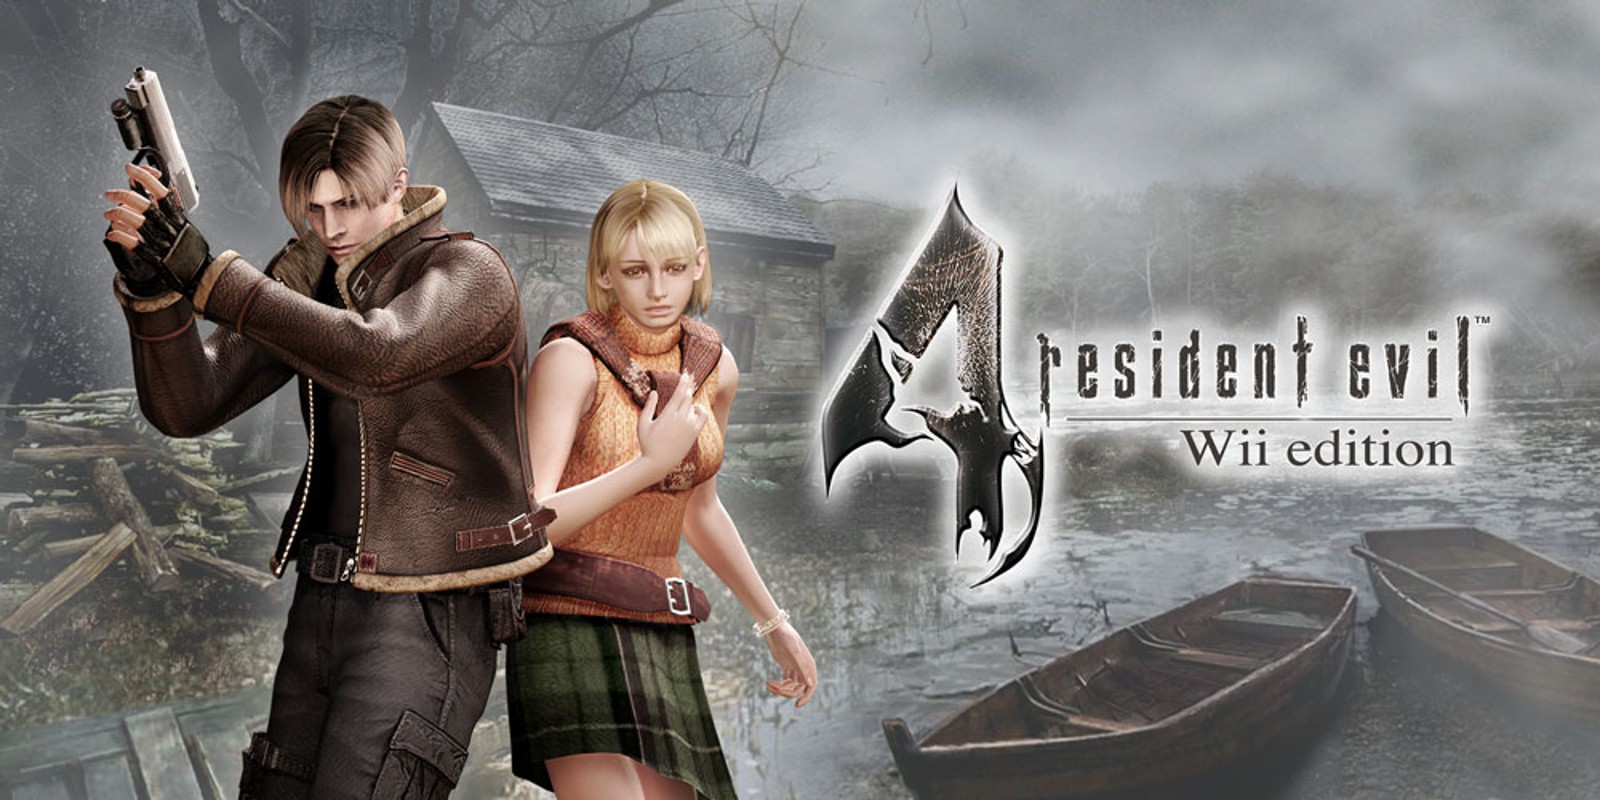 Прохождение игры Resident Evil 4 - Ultimate HD Edition # 31 (Русская версия игры) PC - Ver. HD Full.